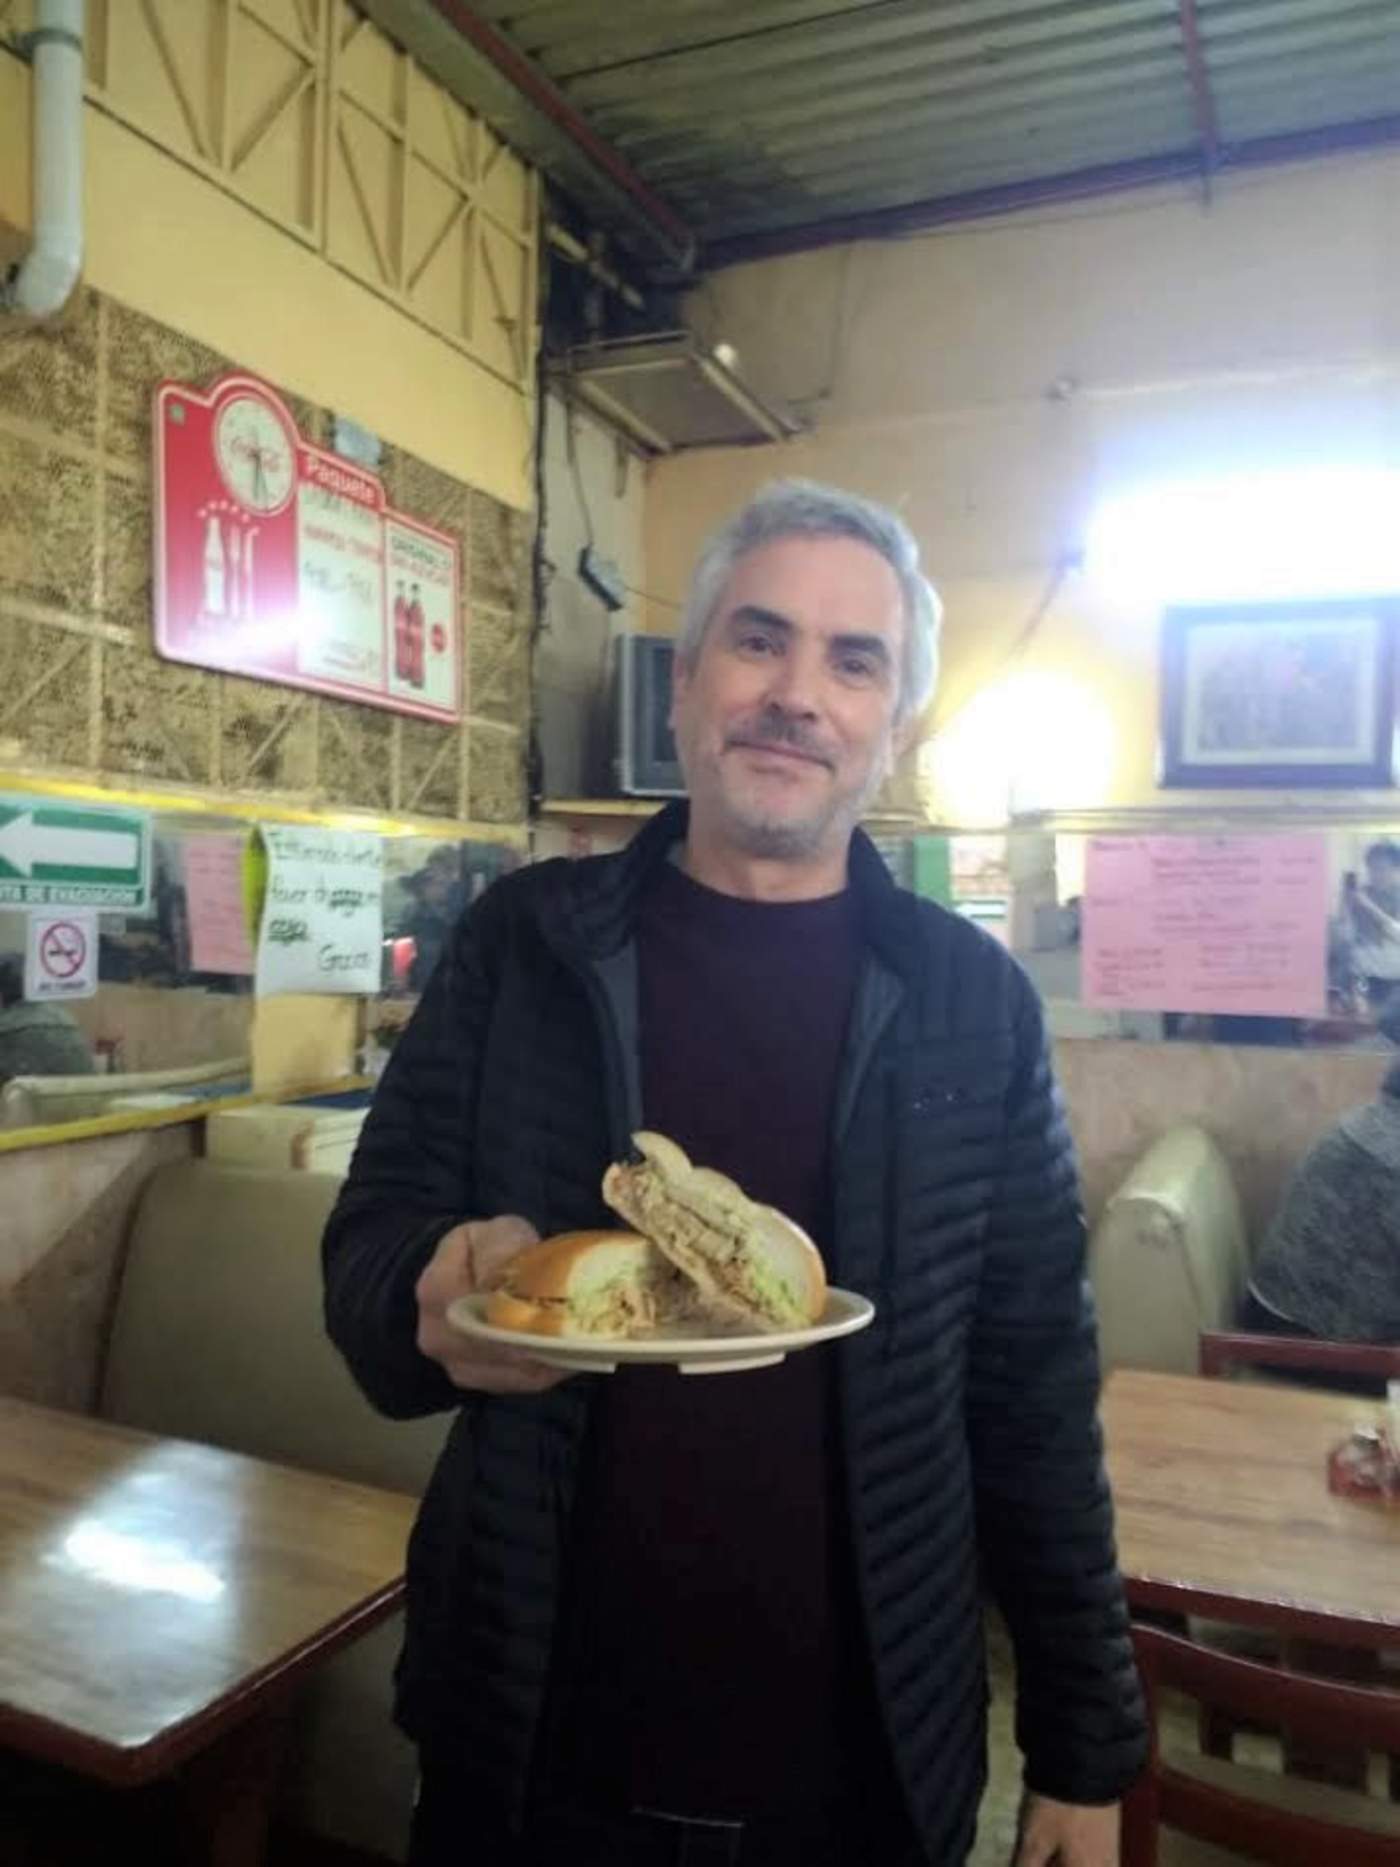 
Recuerdo. El cineasta Alfonso Cuarón mientras posa con un bocadillo, durante los días de grabación de la película Roma.

